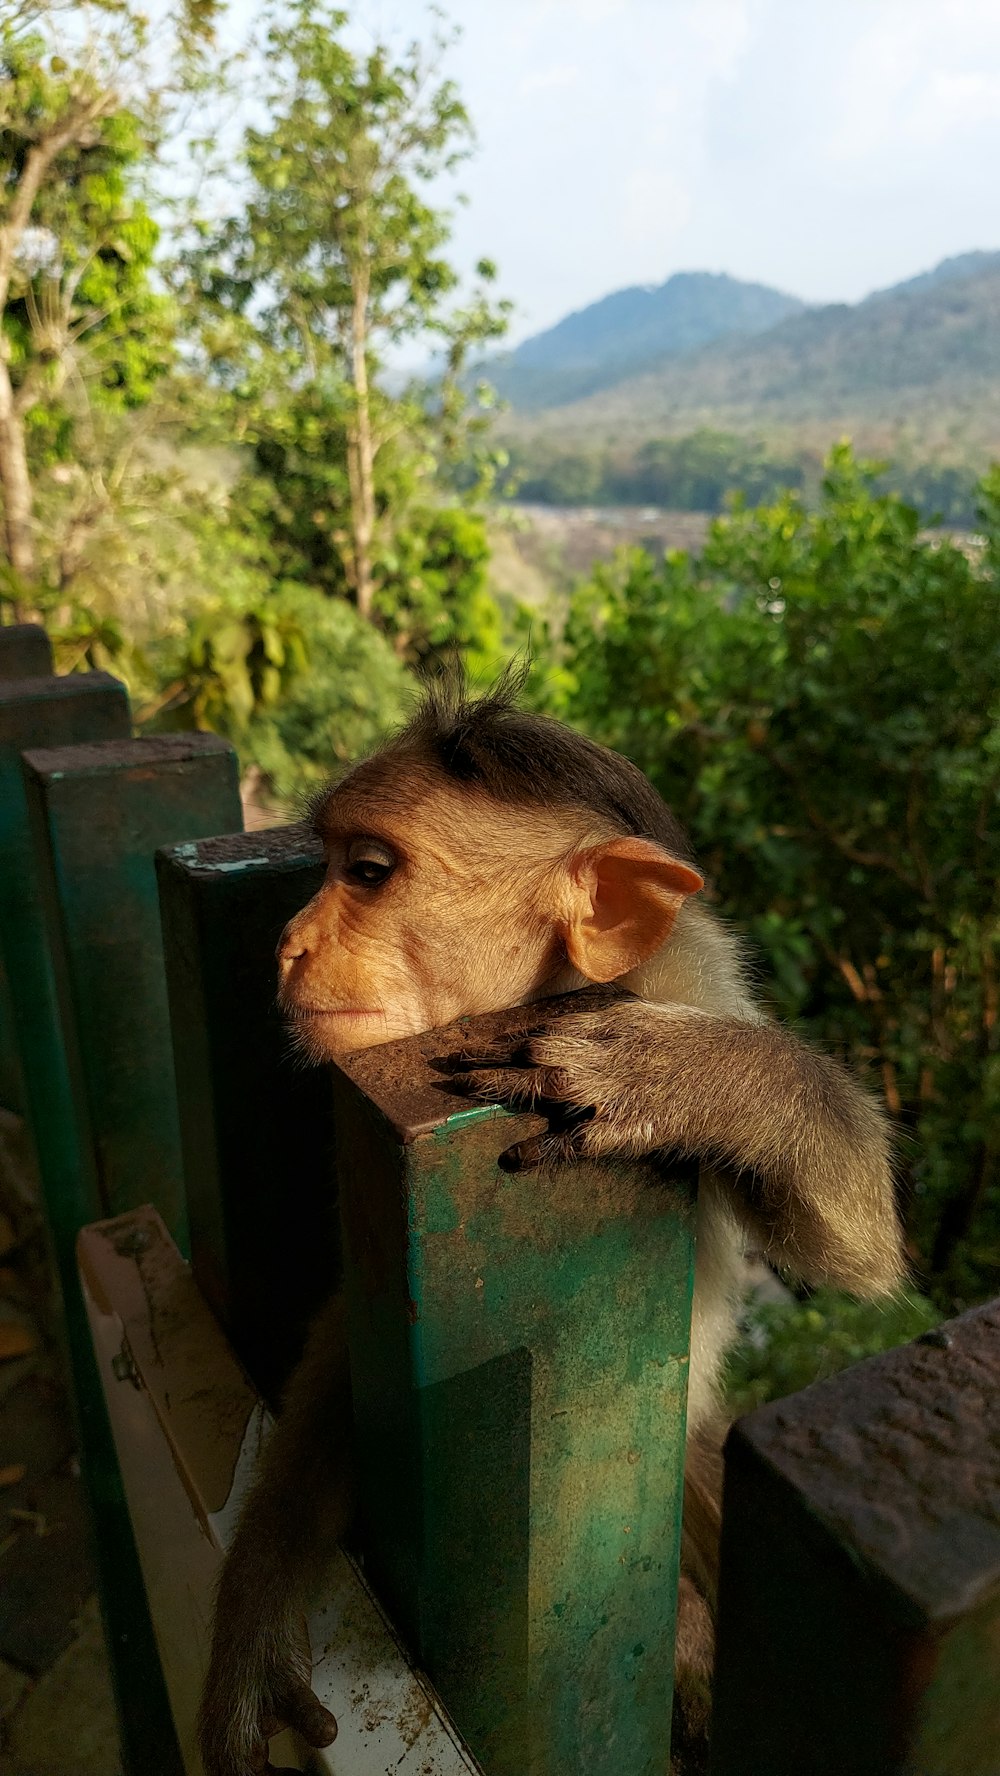 Un mono sentado en lo alto de una valla de madera